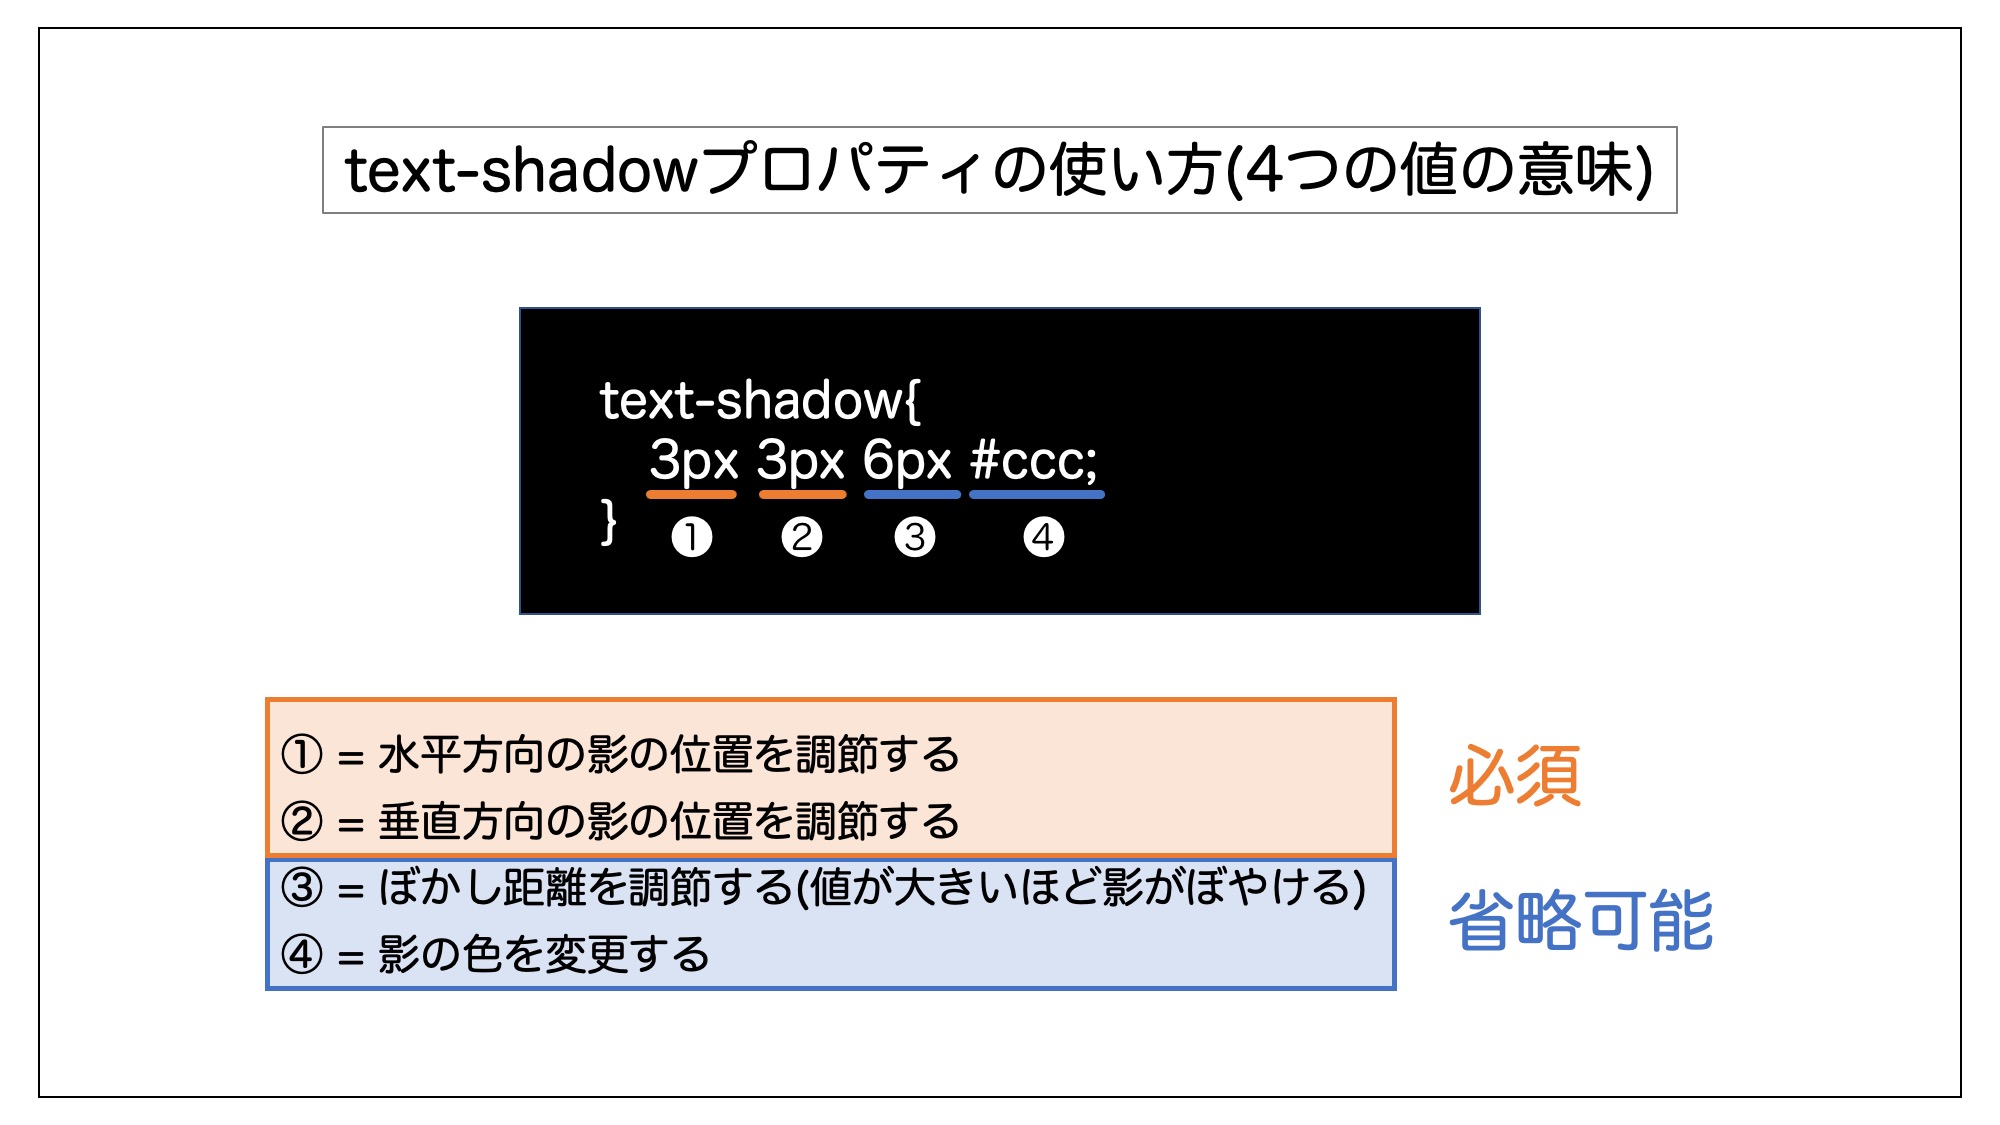 text-shadowプロパティで指定できる4つの値の意味